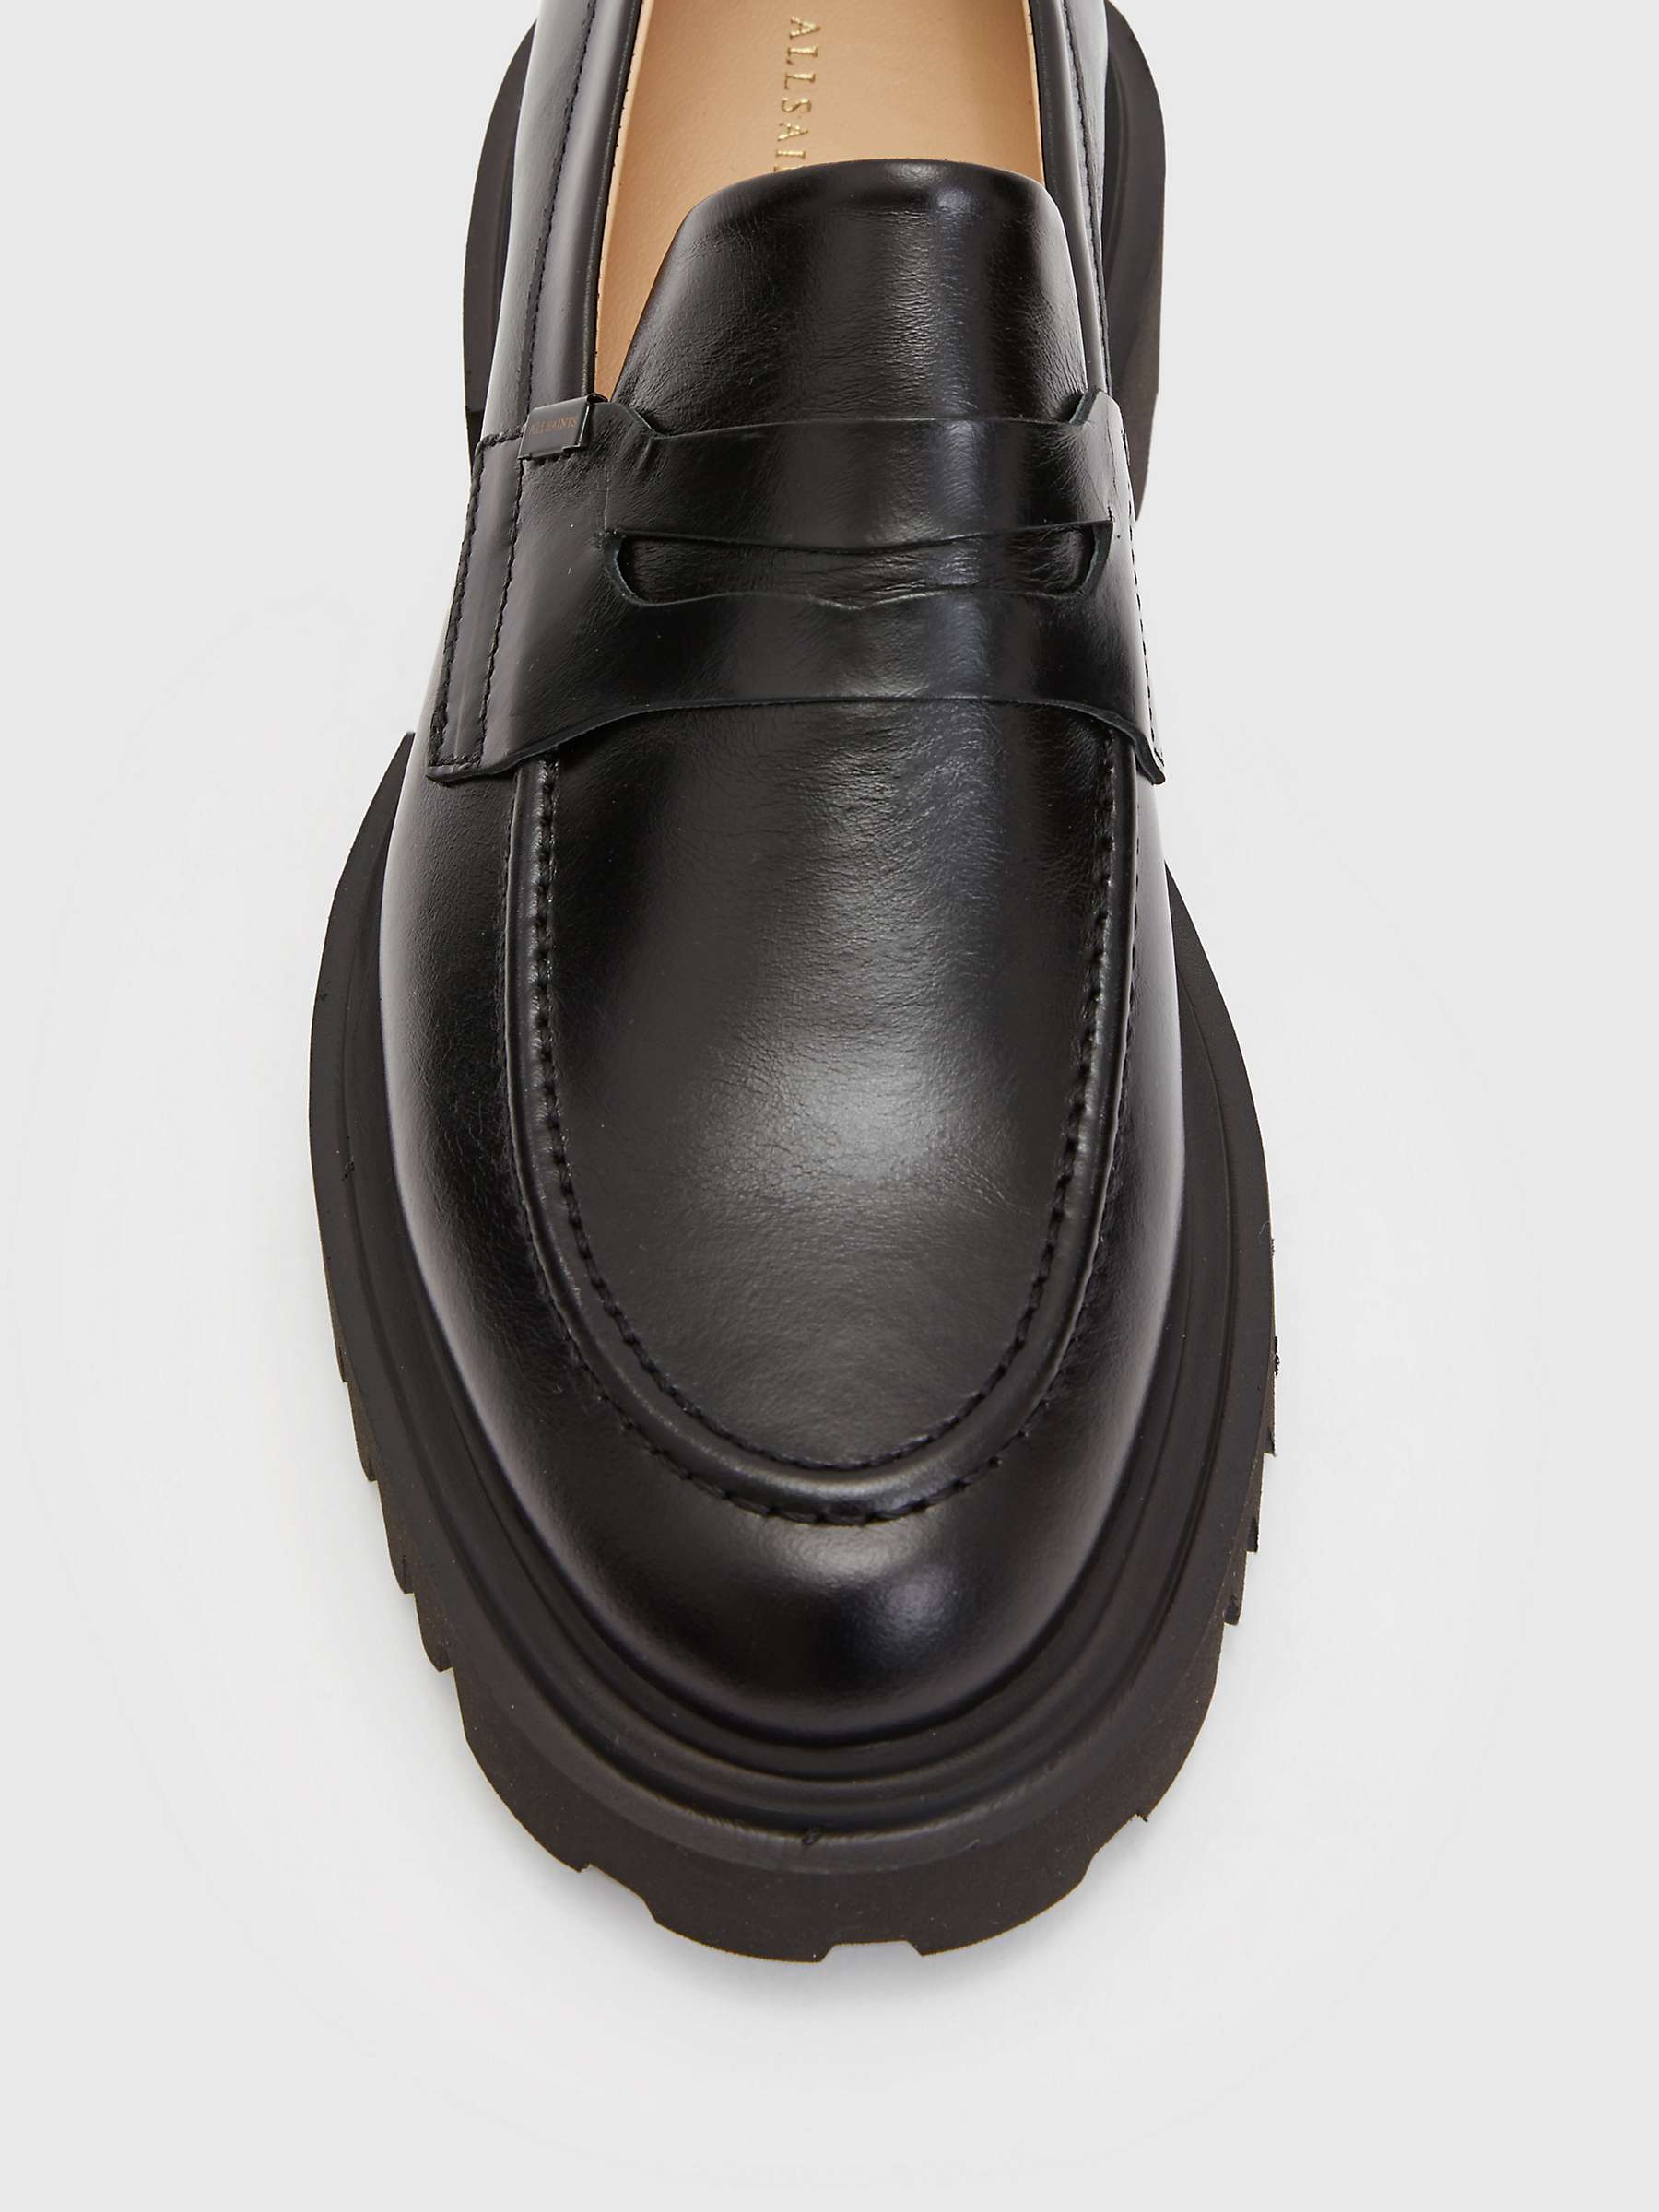 Buy AllSaints Lola Leather Slip On Loafers, Black Online at johnlewis.com